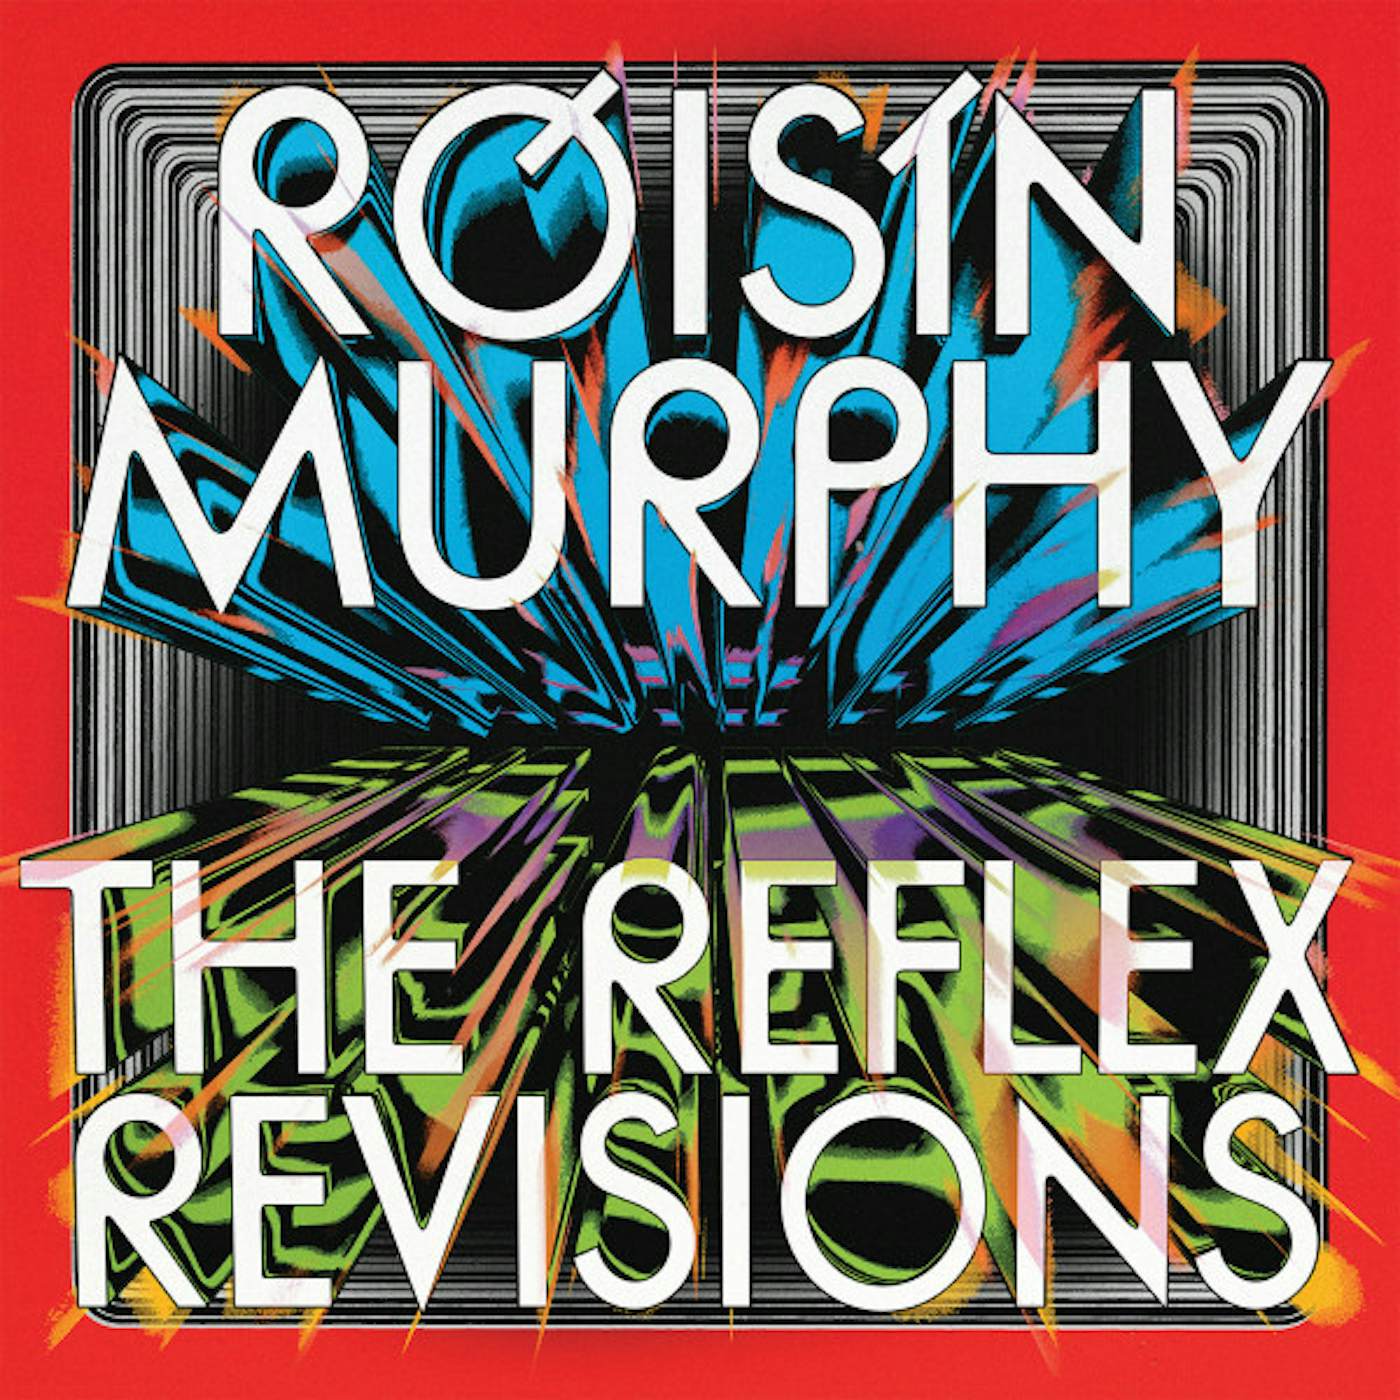 Róisín Murphy REFLEX REVISIONS Vinyl Record